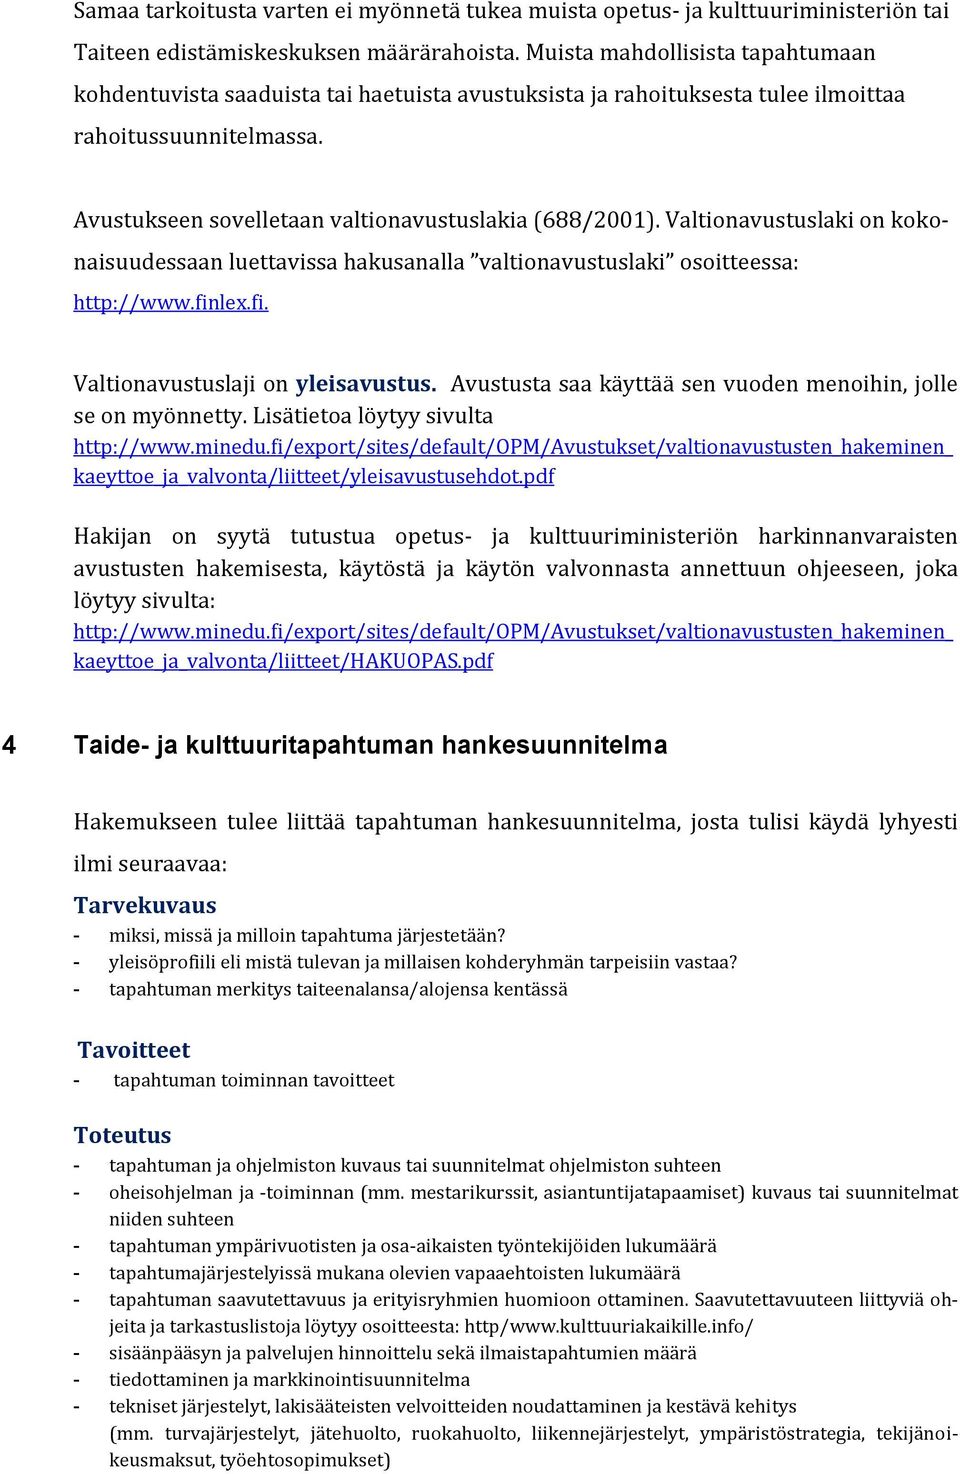 Valtionavustuslaki on kokonaisuudessaan luettavissa hakusanalla valtionavustuslaki osoitteessa: http://www.finlex.fi. Valtionavustuslaji on yleisavustus.